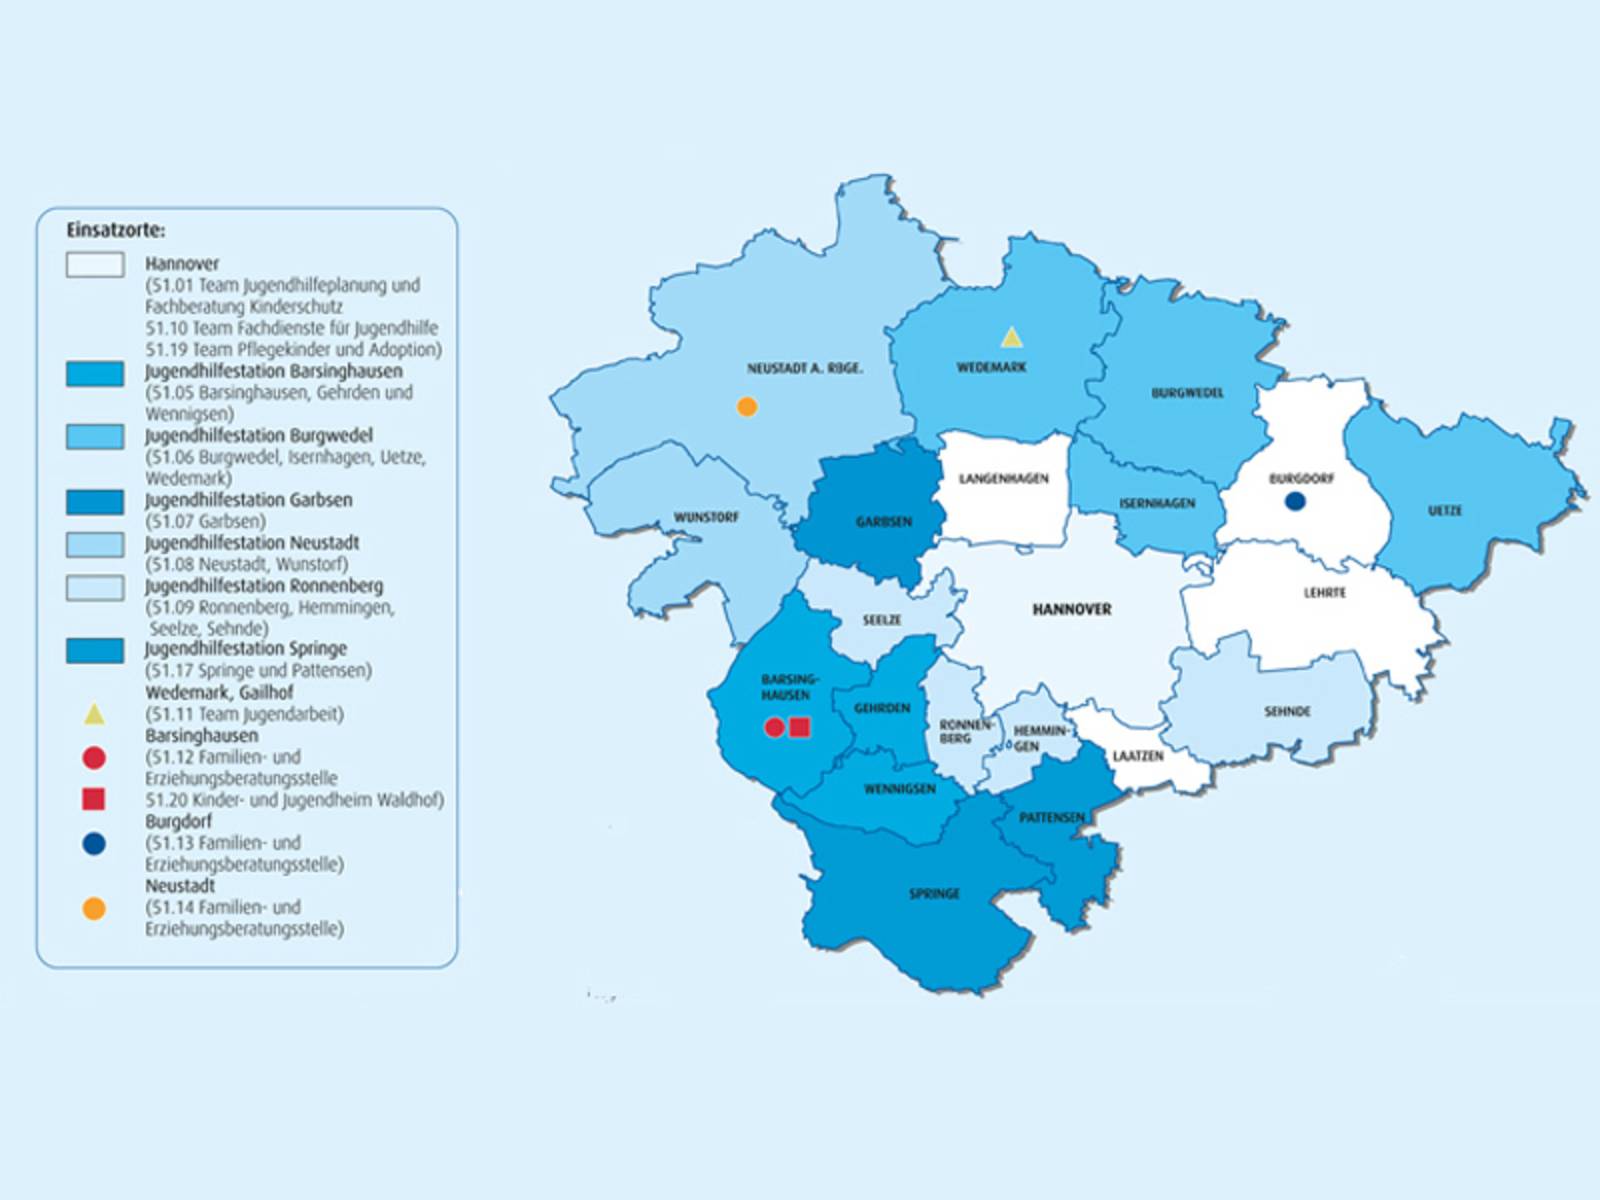 Eine beschriftetet Karte, die die 21 Städte und gemeinden der Region Hannover zeigt. Dazu gibt es eine Legende mit den Einsatzorten dere Jugendhilfe.